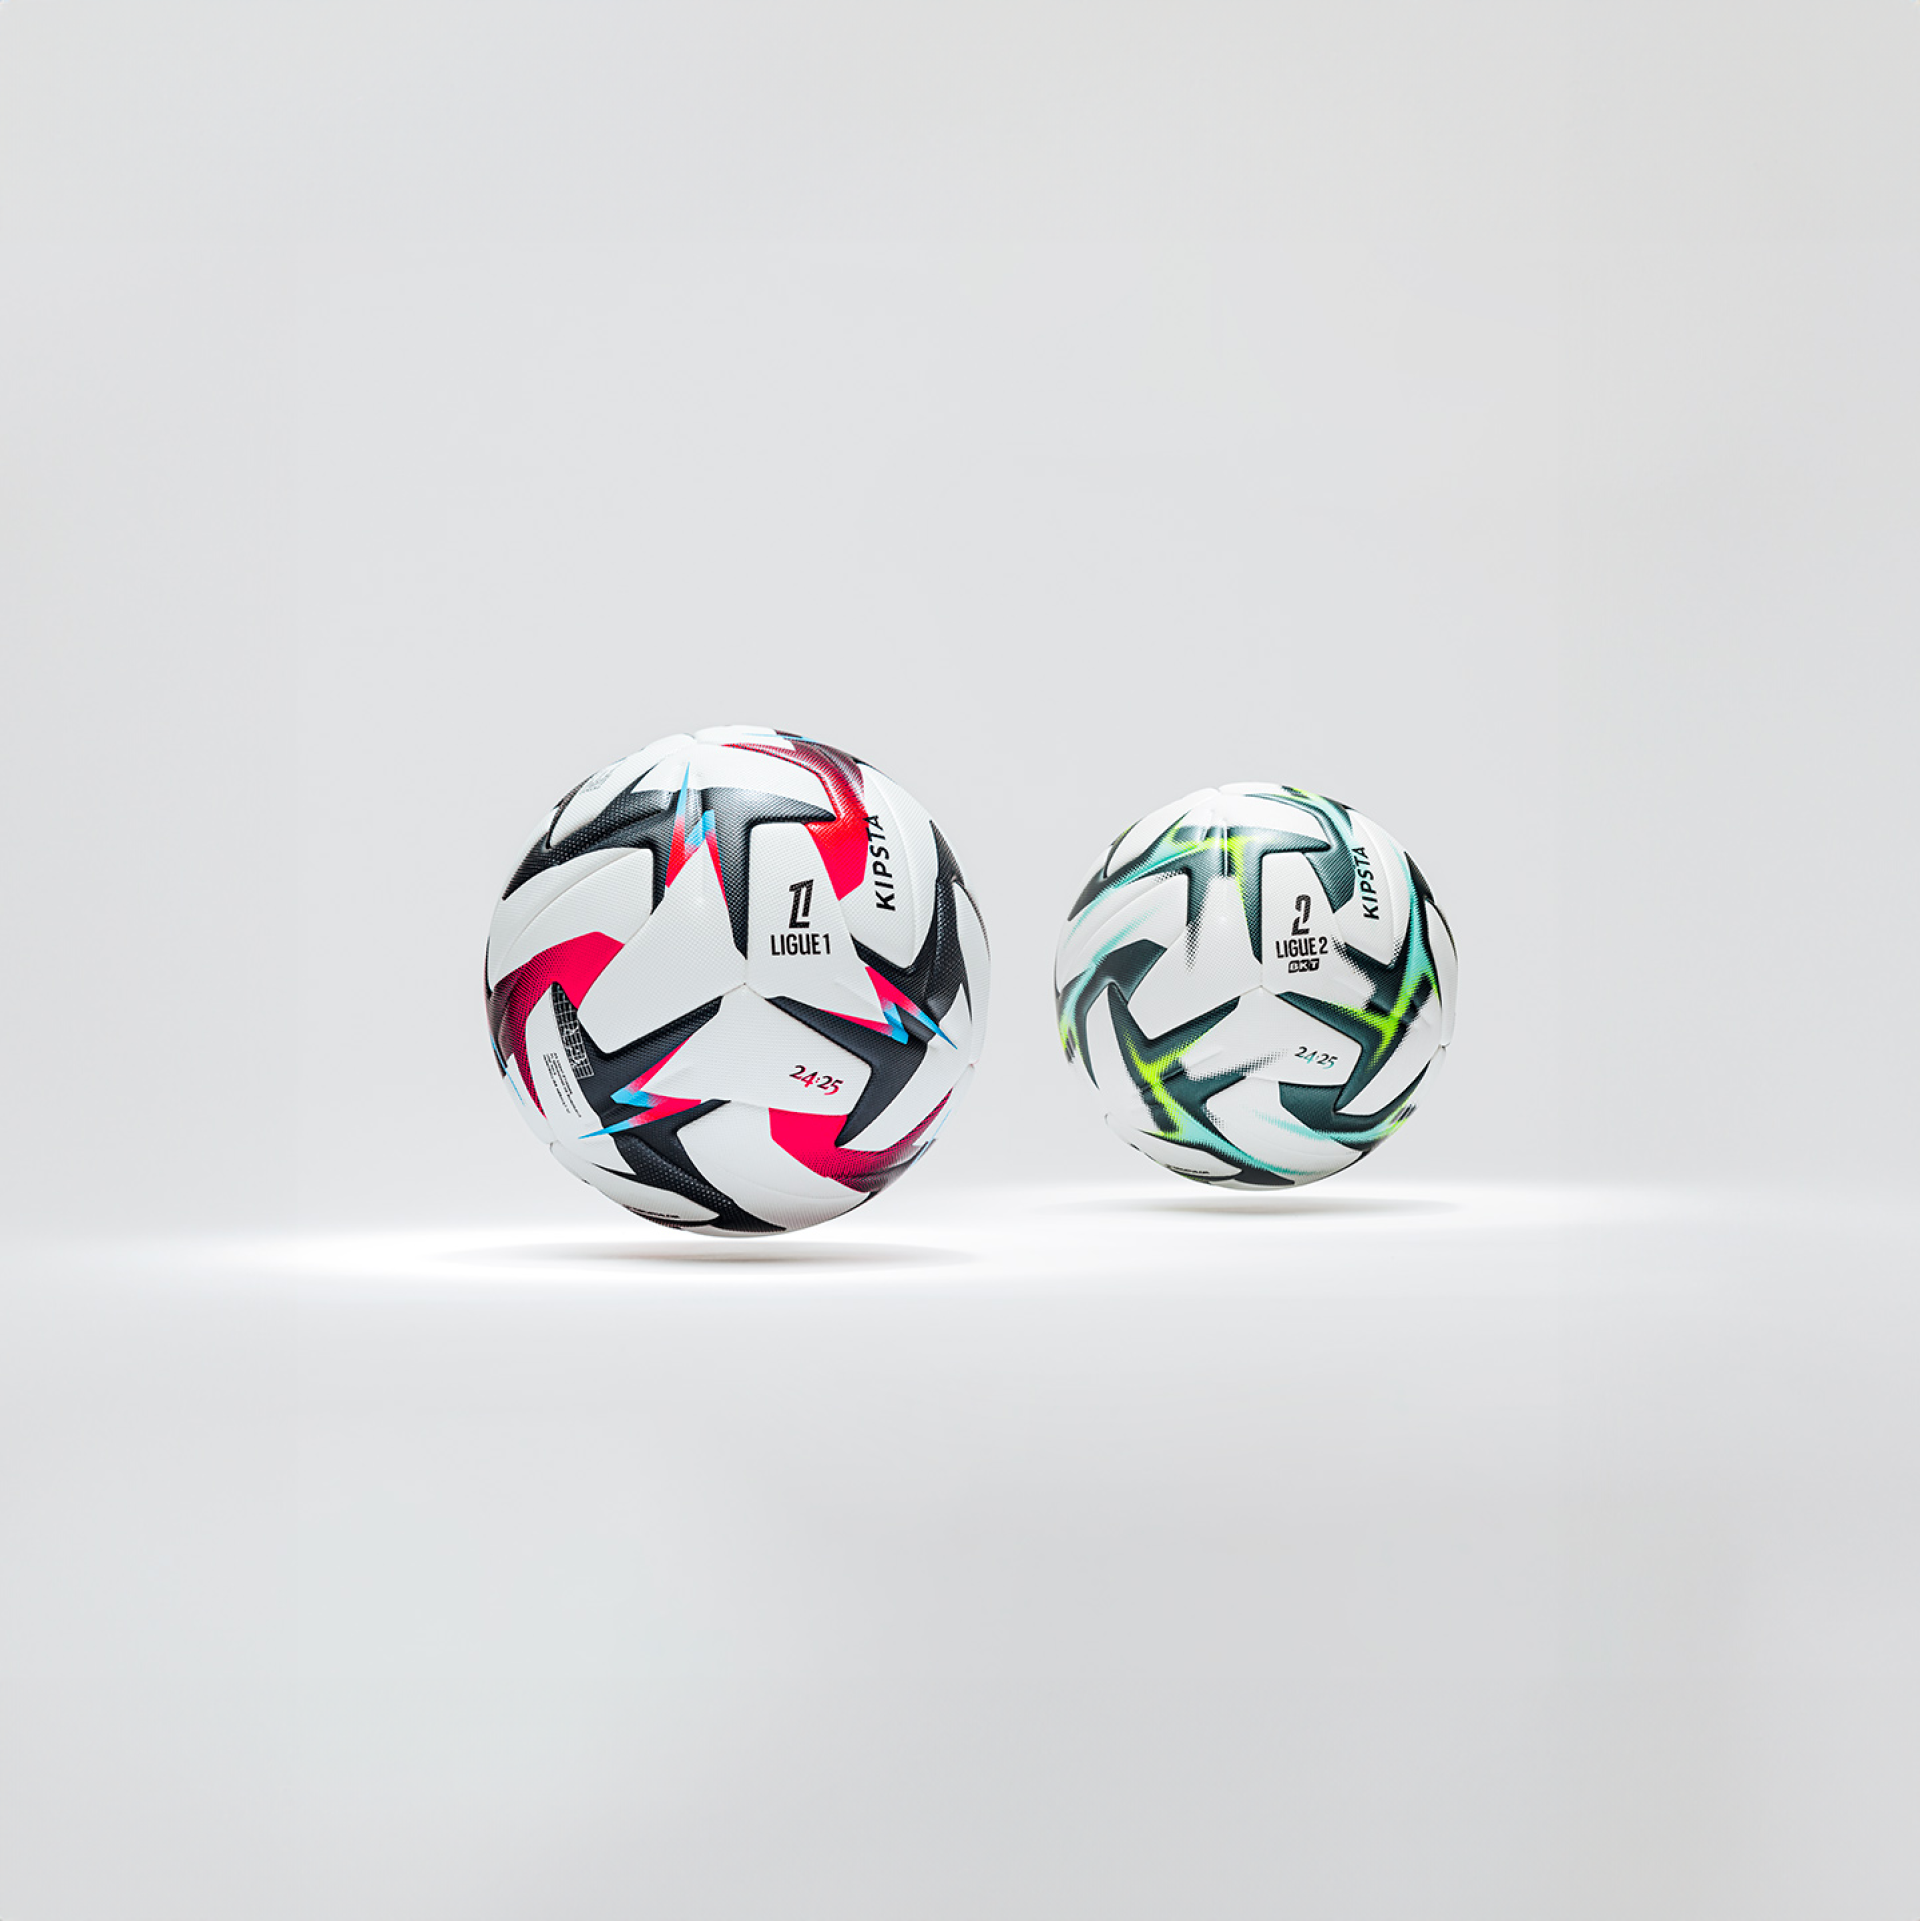 Des nouveaux ballons officiels Kipsta pour la Ligue 1 et la Ligue 2 BKT